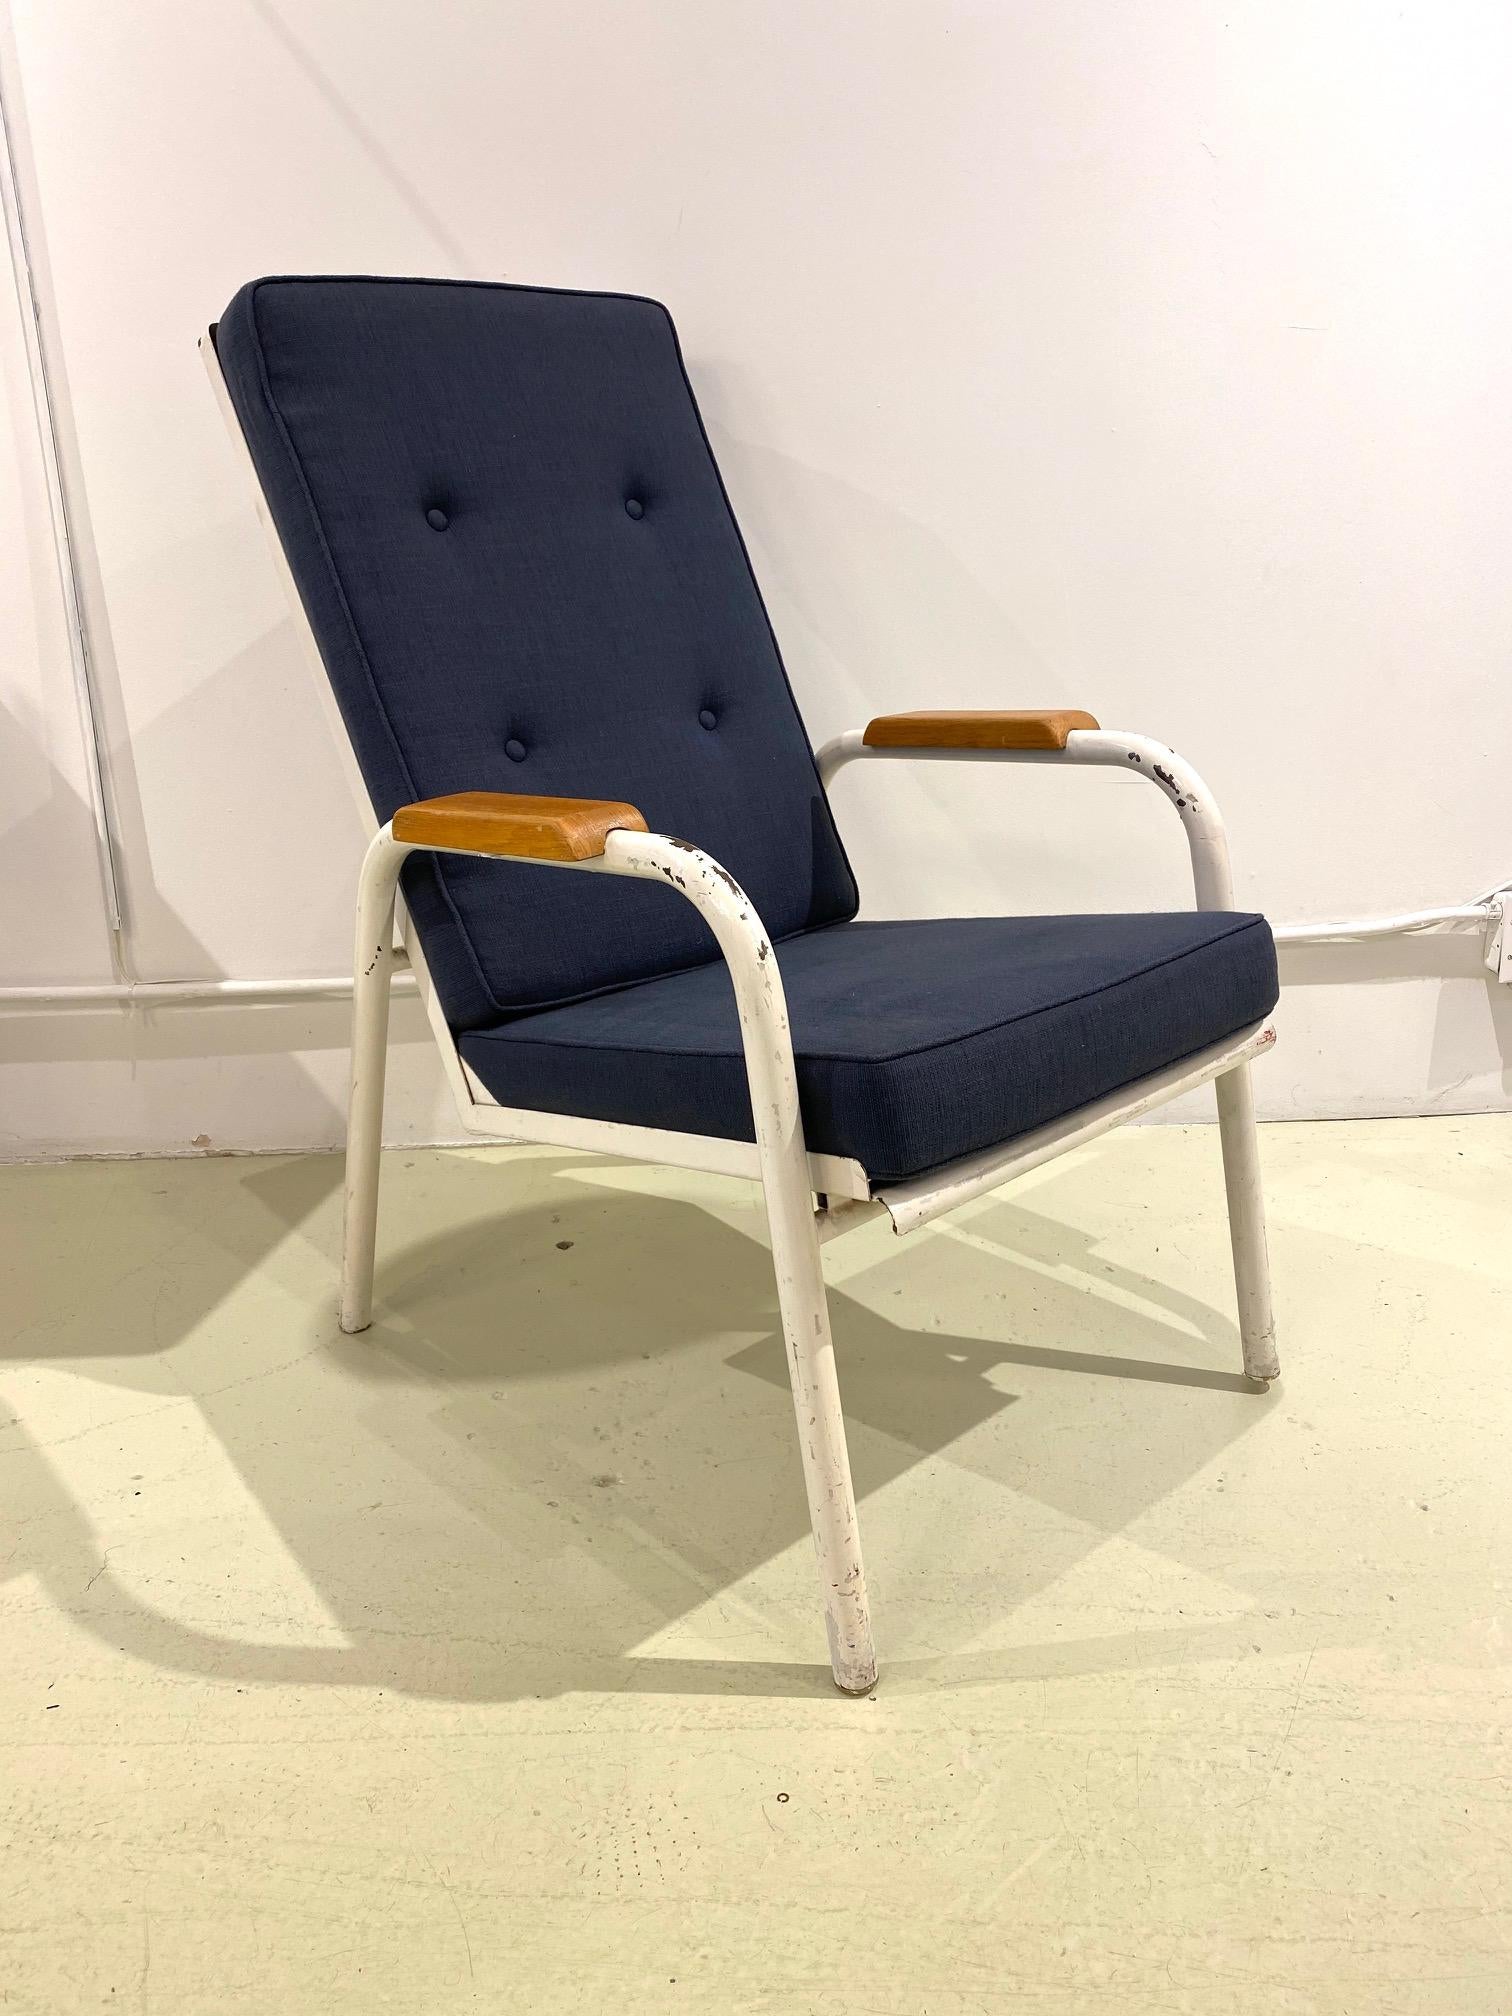 Chaise longue fabriquée par l'Atelier Jean Prouvé pour le Franco, U. S. Memorial hospital à Saint - Lo. De 1947 à 1949, Charlotte Perriand a agi en tant qu'architecte conseil pour tout l'ameublement intérieur.
La chaise est en bon état d'origine,